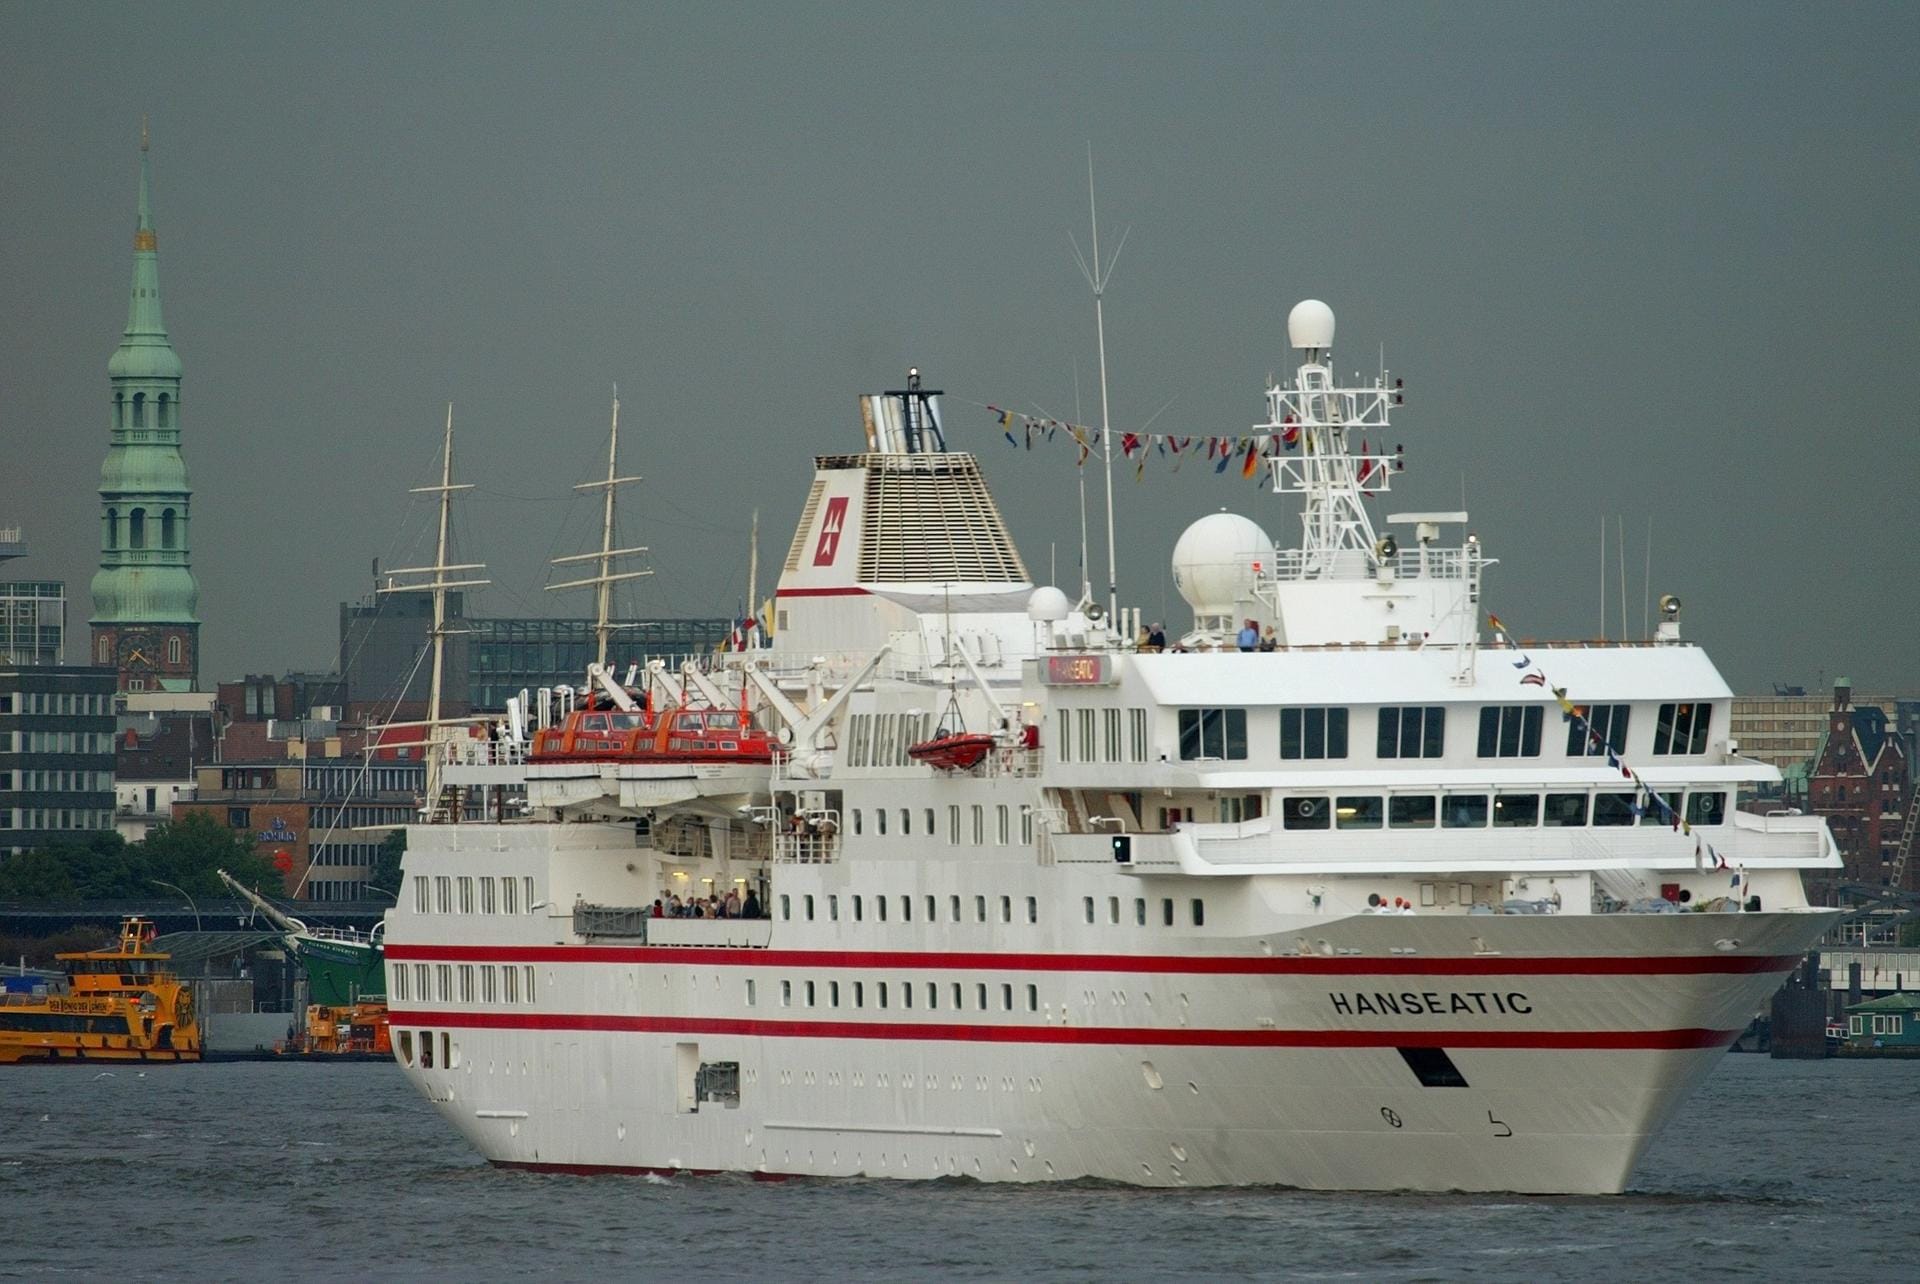 Das Kreuzfahrtschiff "Hanseatic" von der Reederei Hapag Lloyd beim Auslaufen aus dem Hafen in Hamburg. Bei den Boutique-Schiffen belegt sie Rang drei.